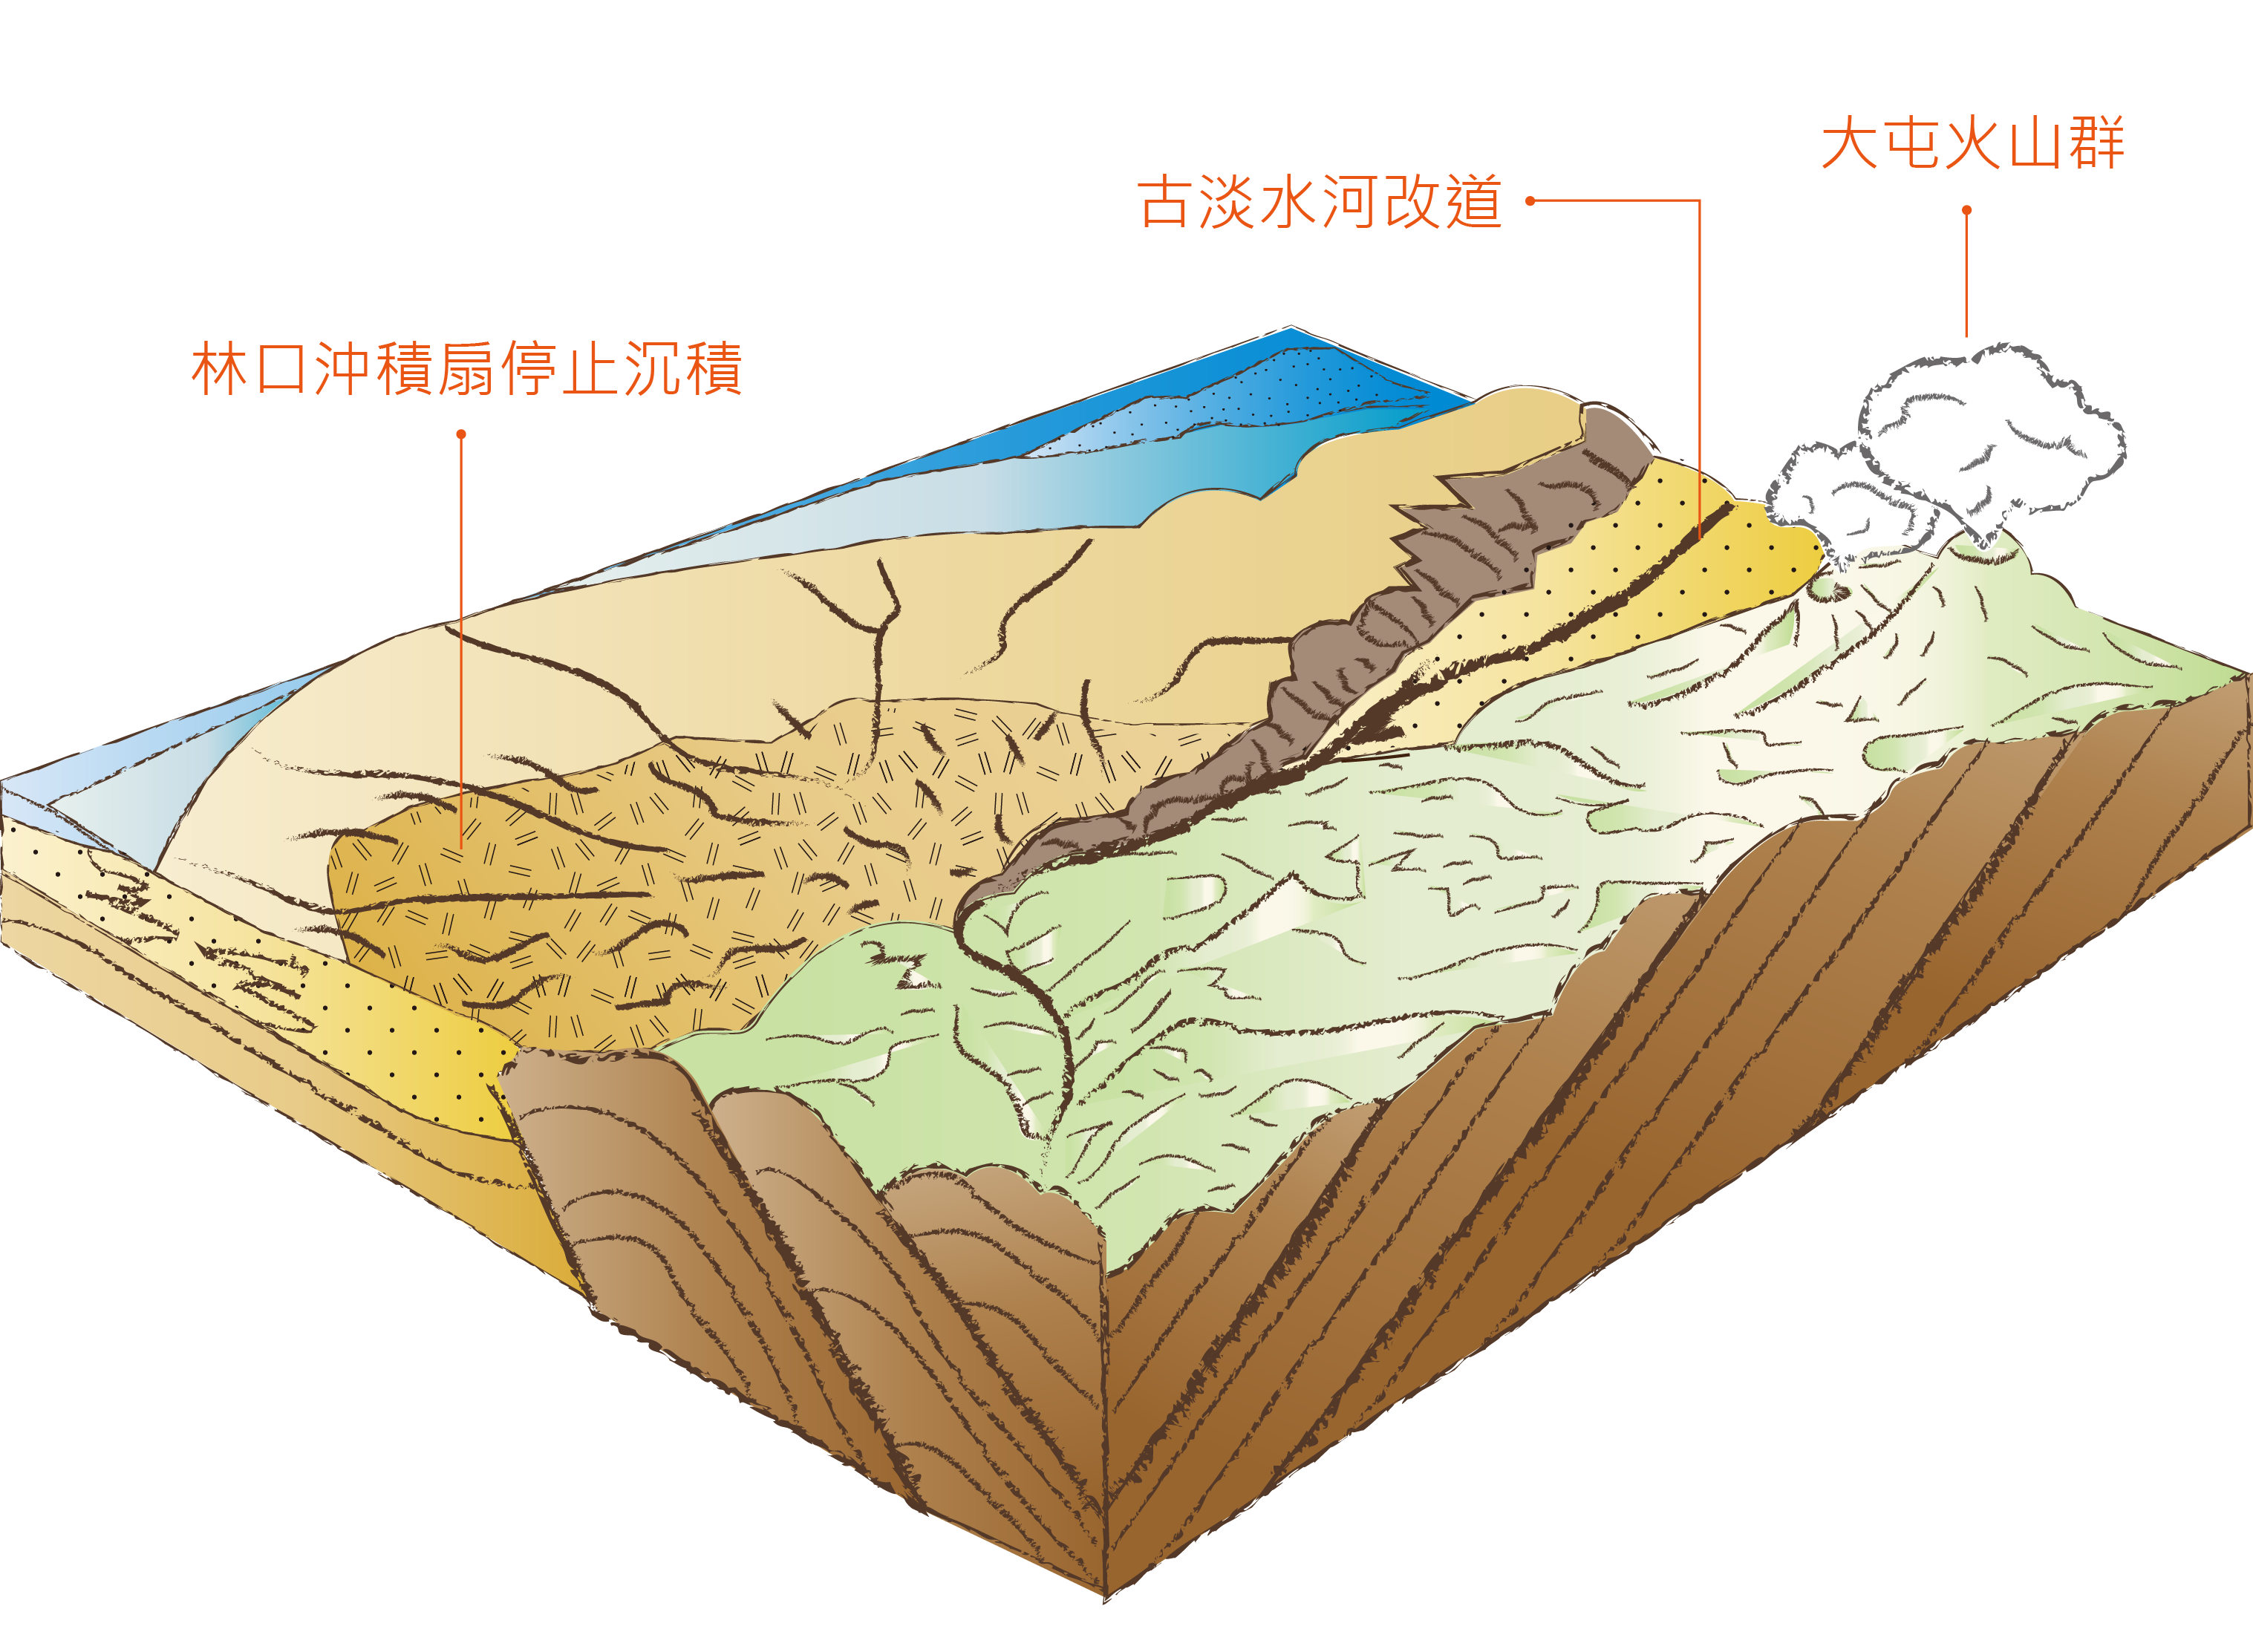 80萬年前《臺灣北部造山運動停止 大屯火山噴發》